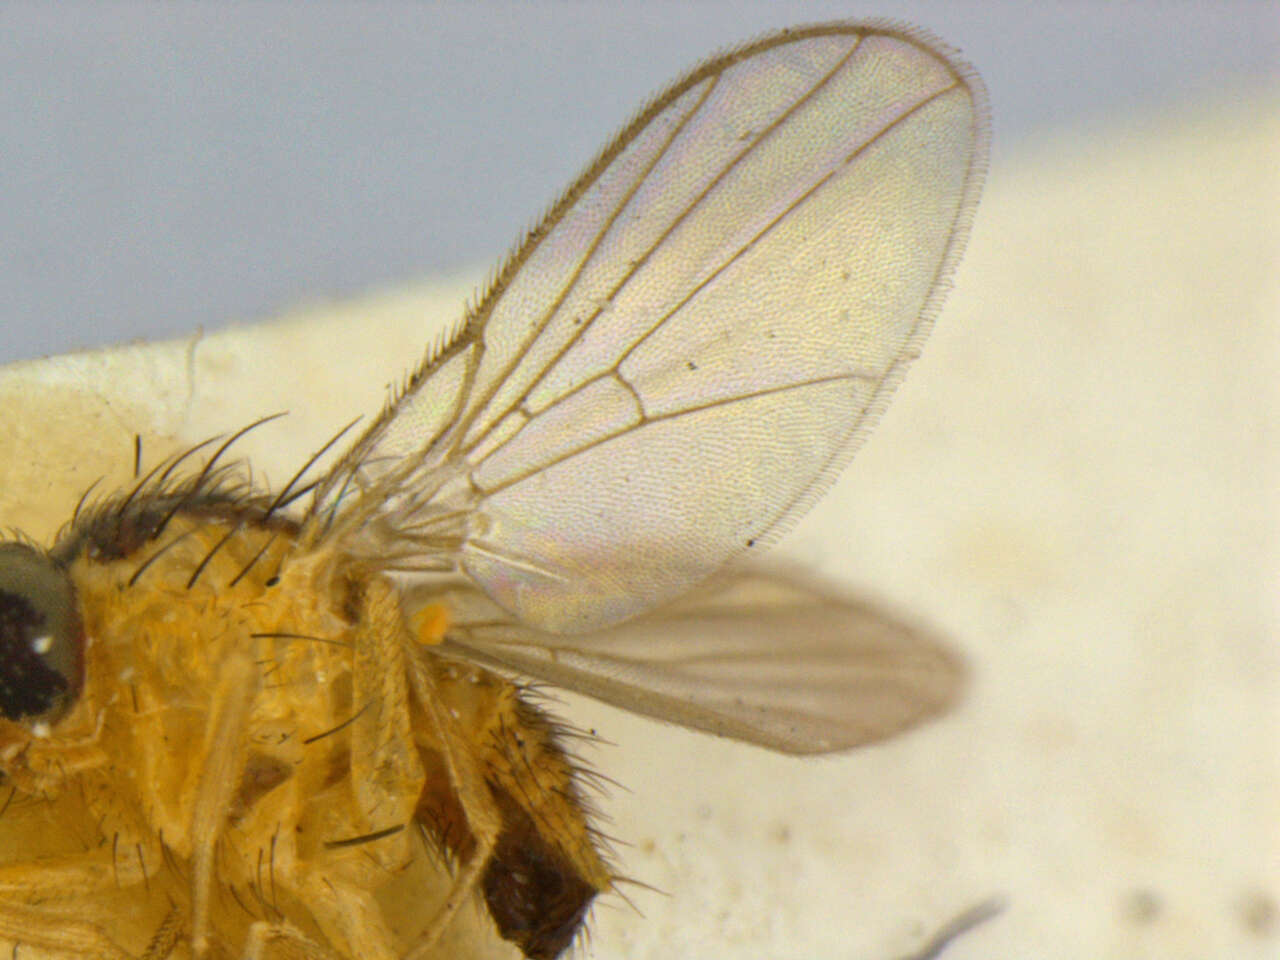 Image de Liriomyza blechi Spencer 1973